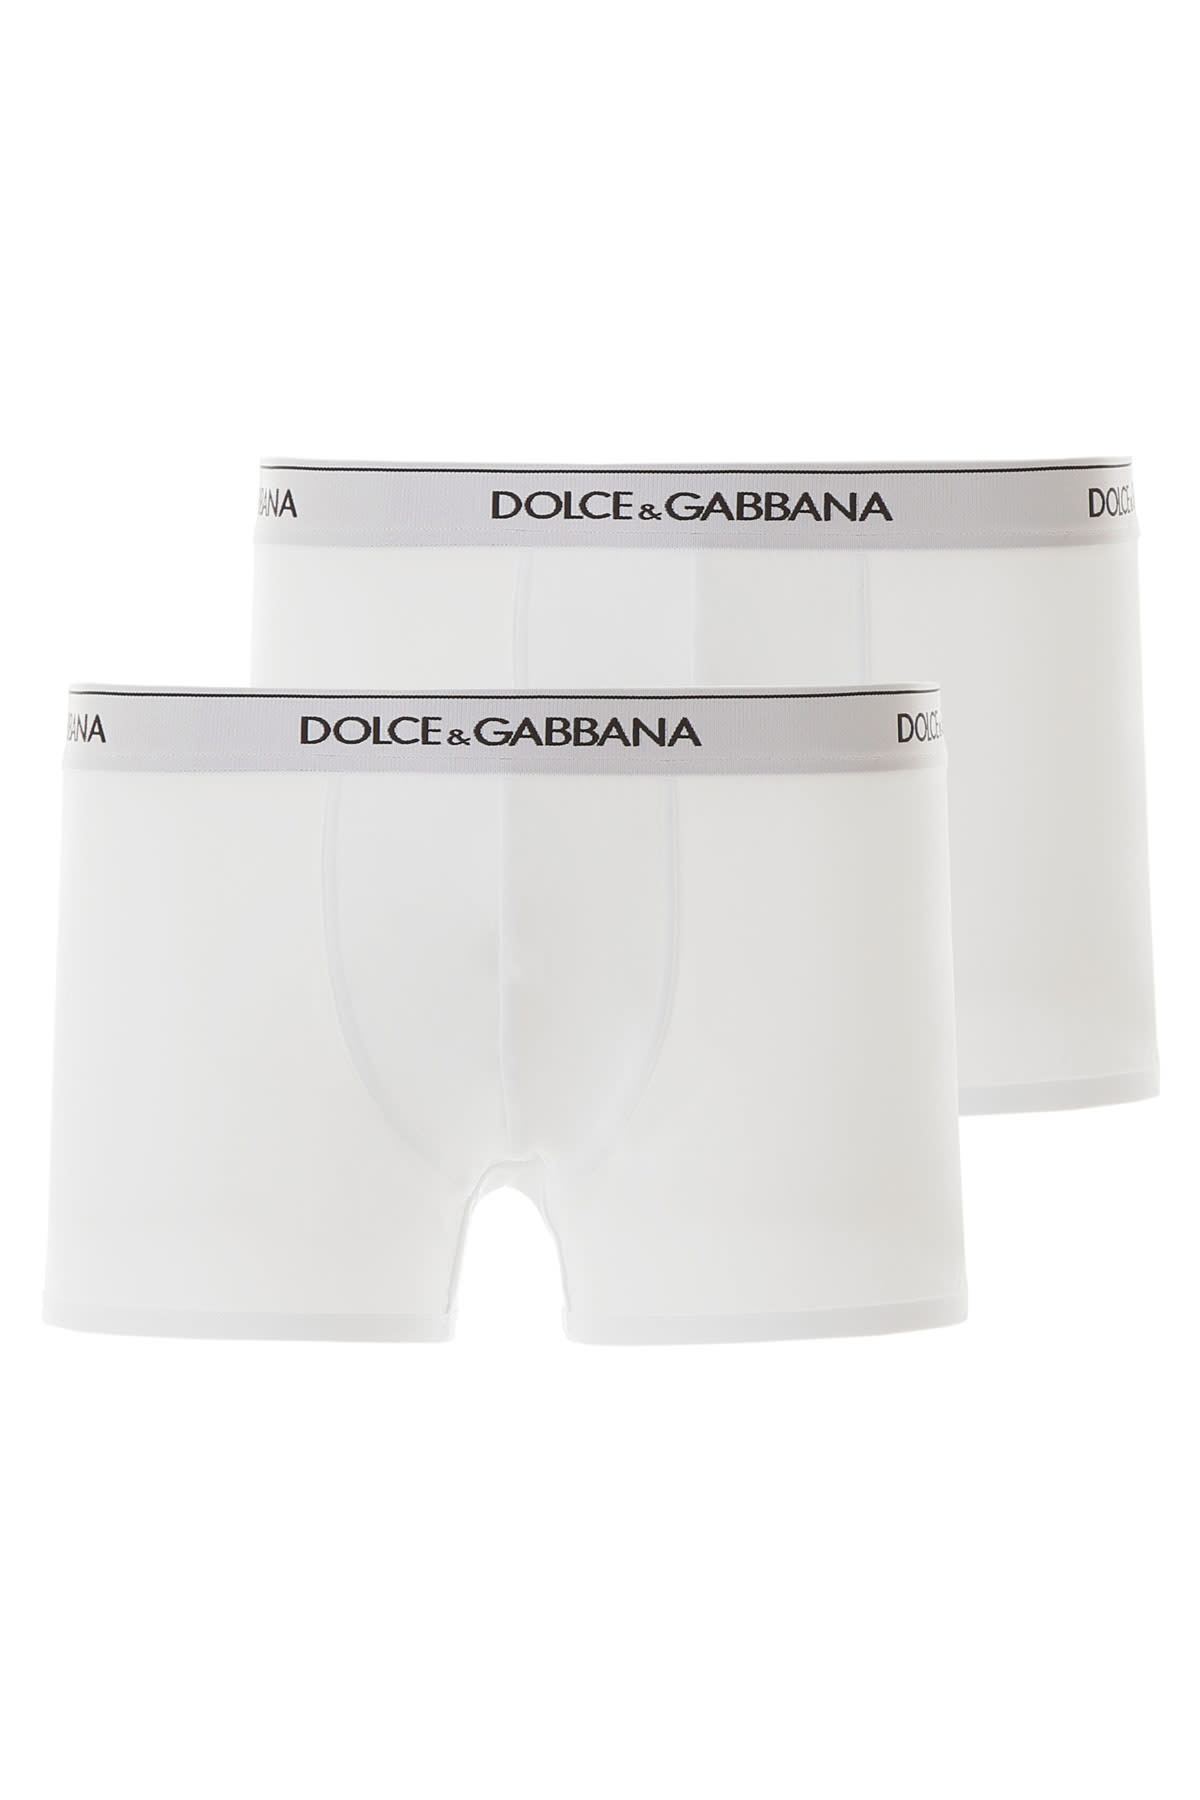 Dolce & Gabbana Bi-pack Underwear Boxer